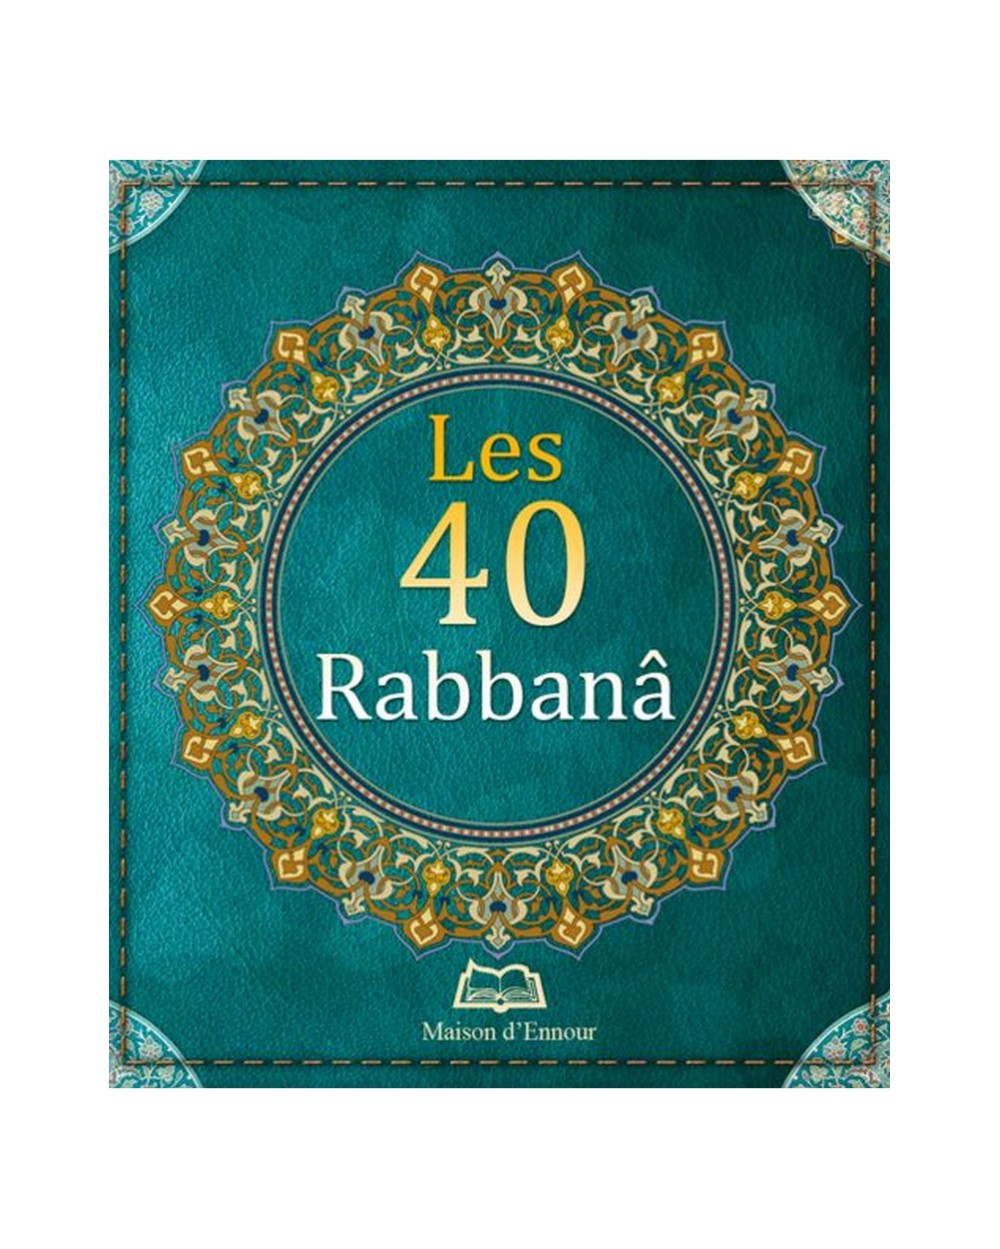 Les 40 Rabbanâ - Maison d'Ennour